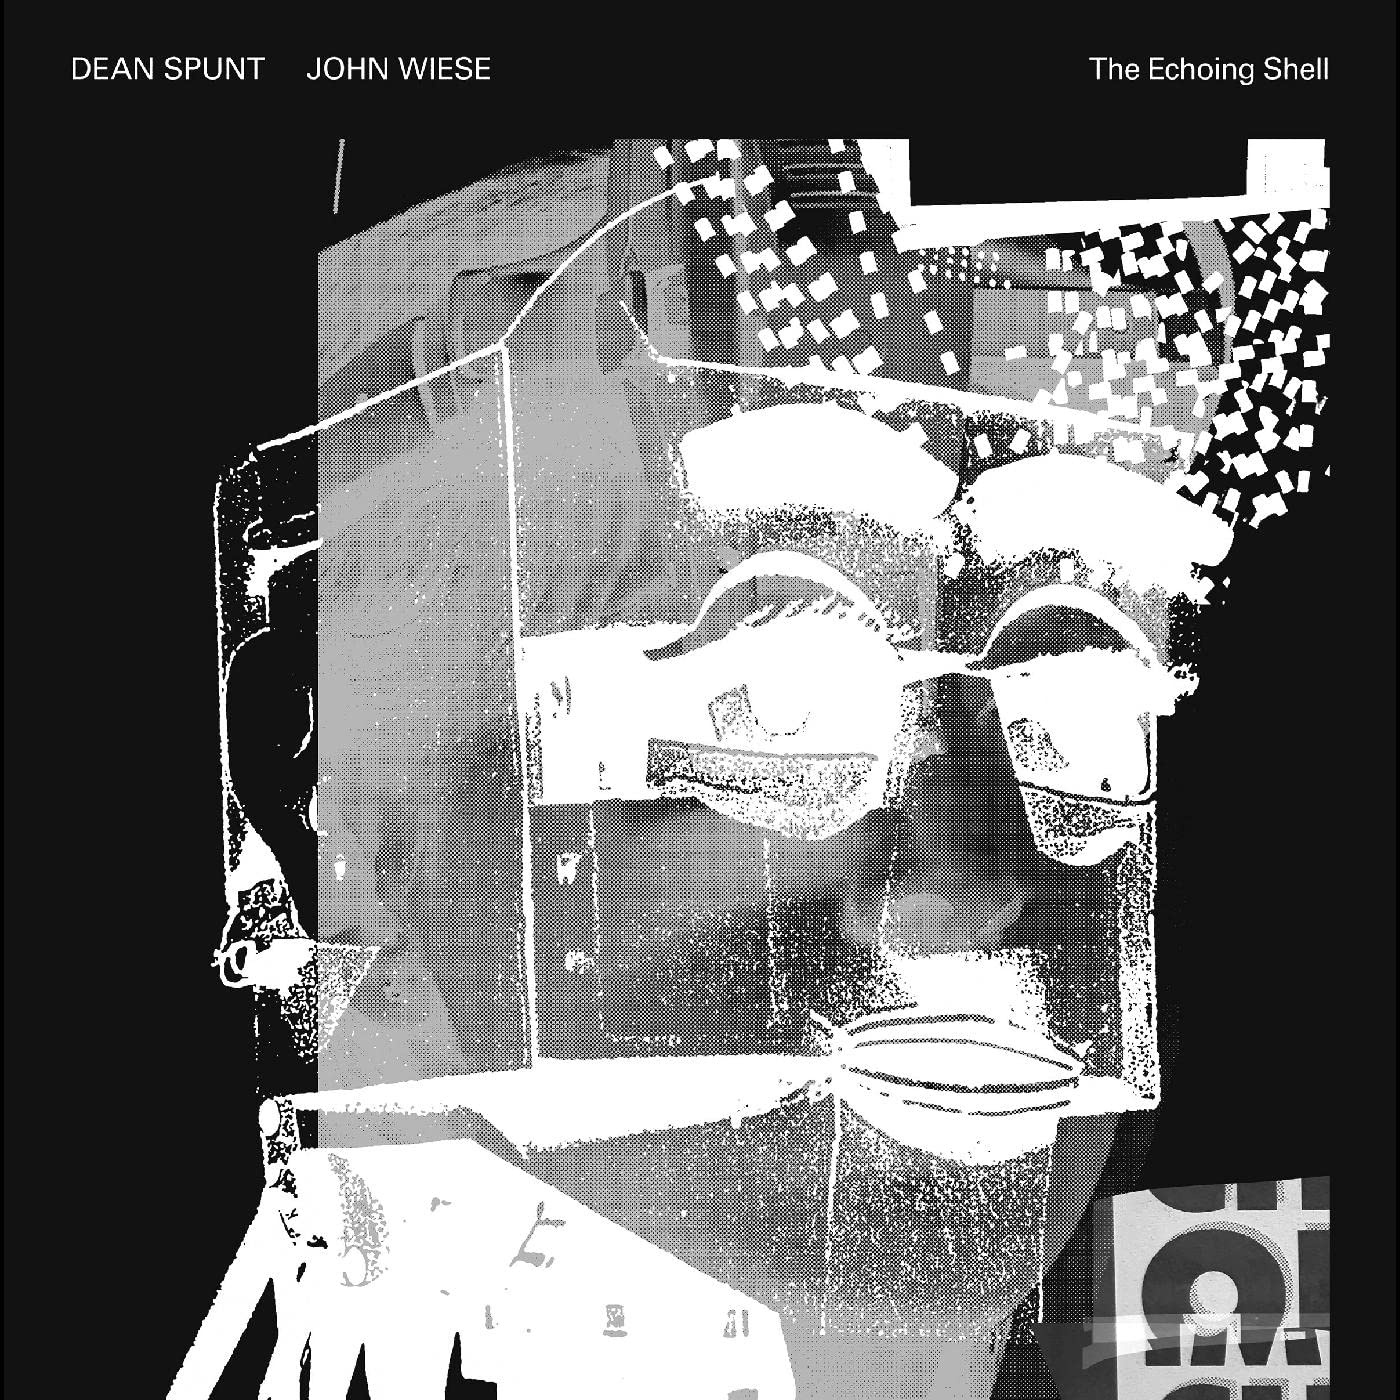 Dean Spunt & John Wiese - The Echoing Shell vinyl cover